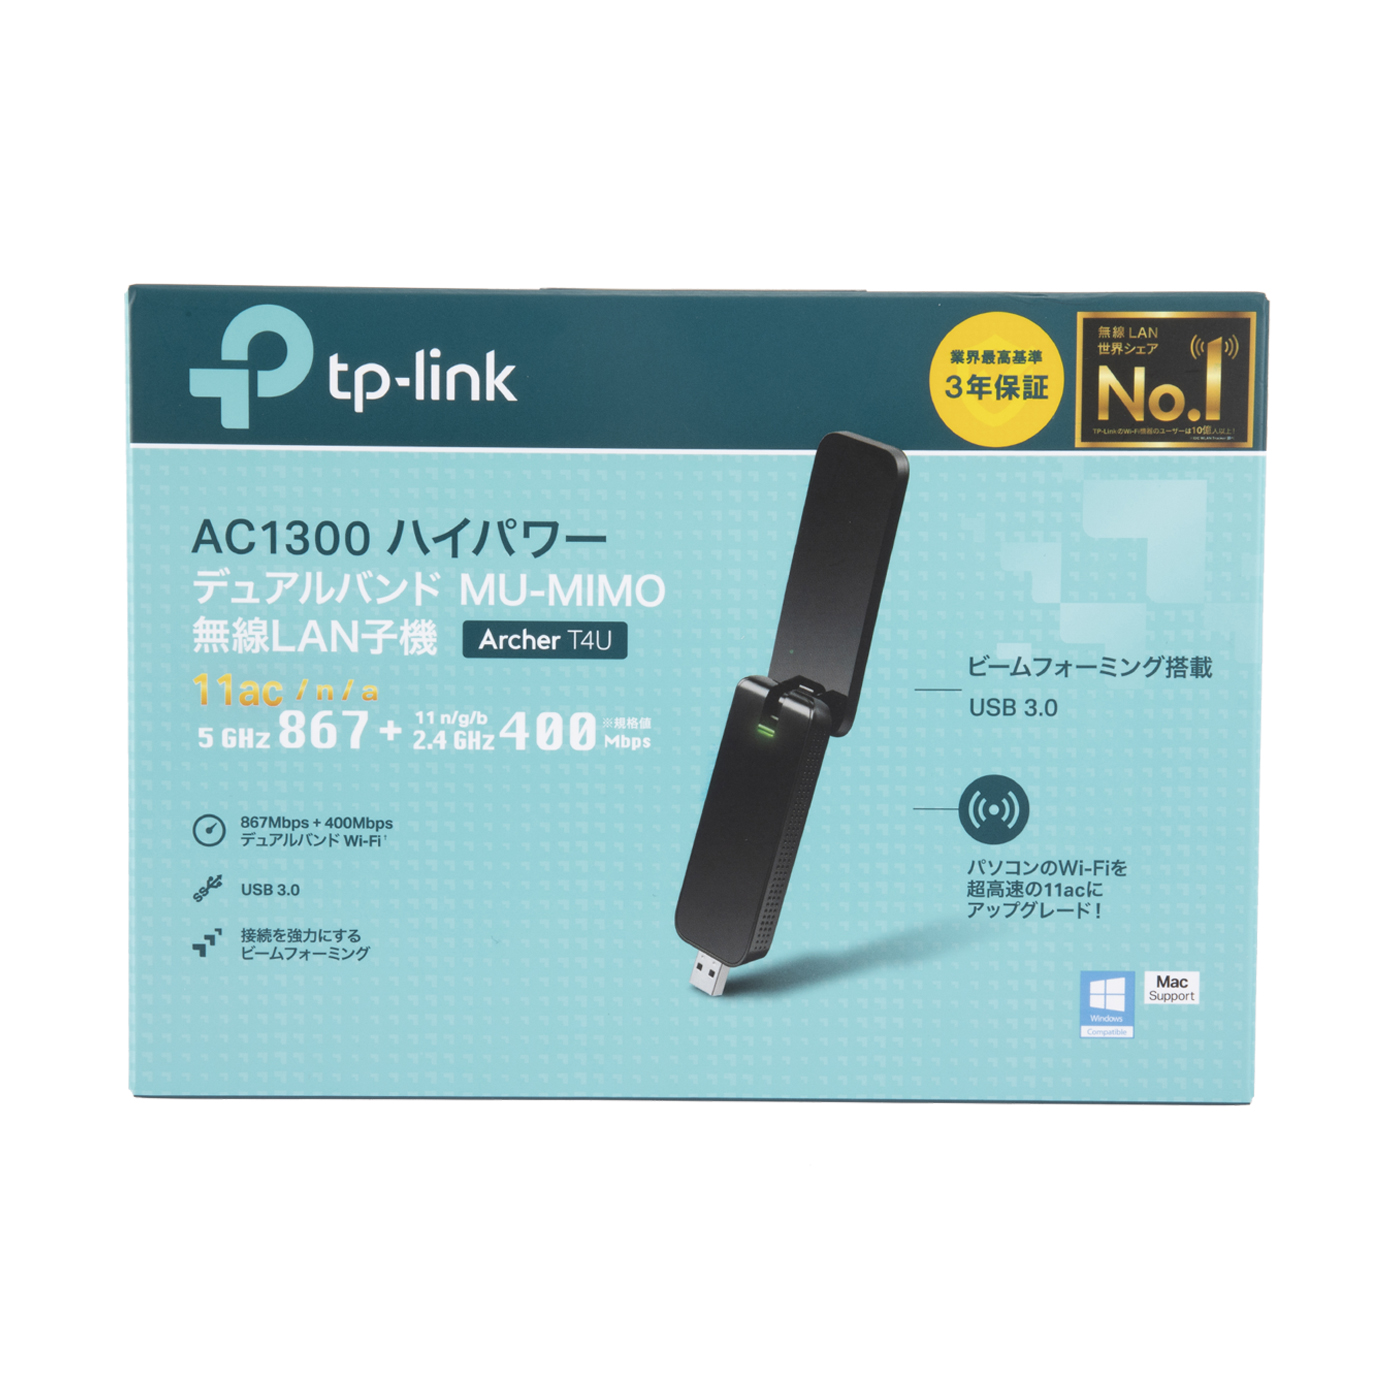 日本正規代理店品 Archer T3U Plus 無線LAN子機 11ac n a g b 867Mbps+400Mbps MU-MIMO USB  3.0 ハイパワー デュアルバンド 3年保証